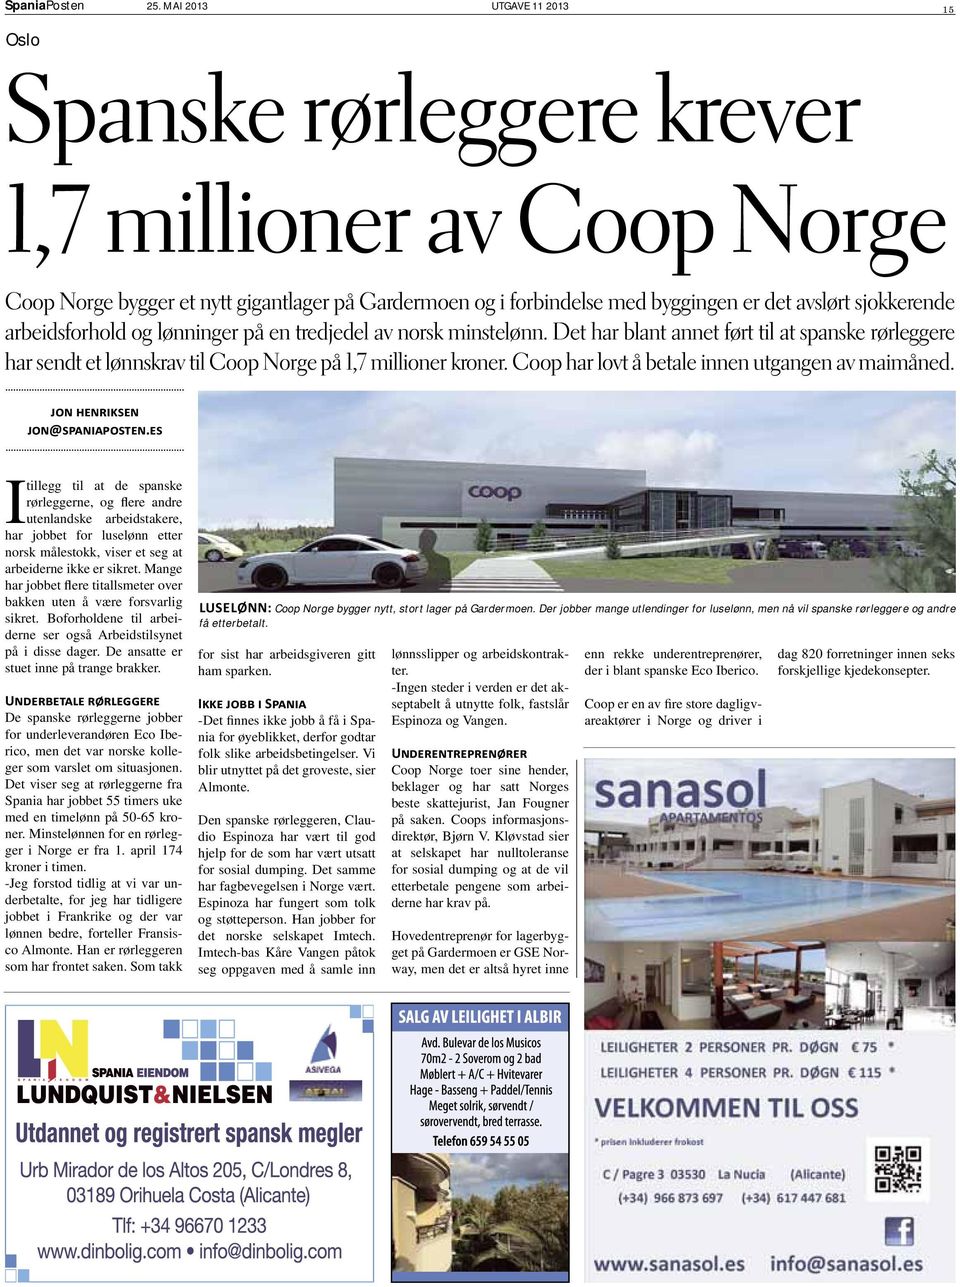 arbeidsforhold og lønninger på en tredjedel av norsk minstelønn. Det har blant annet ført til at spanske rørleggere har sendt et lønnskrav til Coop Norge på 1,7 millioner kroner.